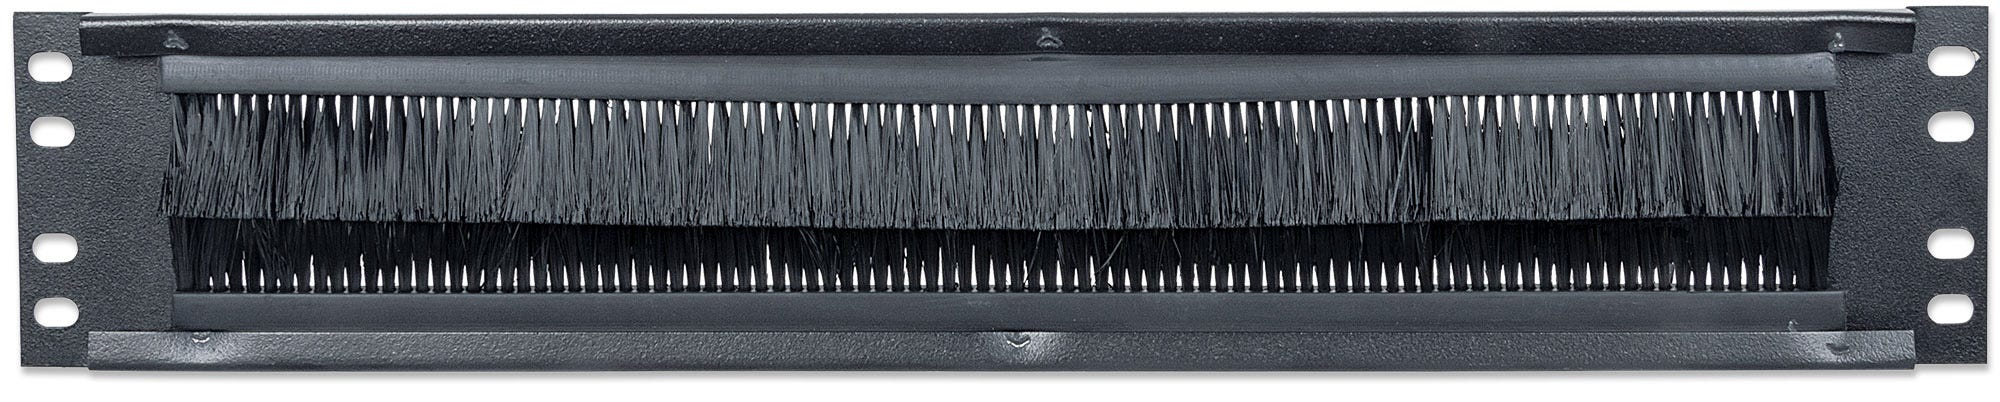 Intellinet 19" Kabeldurchführung, 2 HE, mit Bürstenleiste, schwarz - Rack-Blende mit Bürste für Kabeldurchführung - Schwarz, RAL 9005 - 2U - 48.3 cm (19")